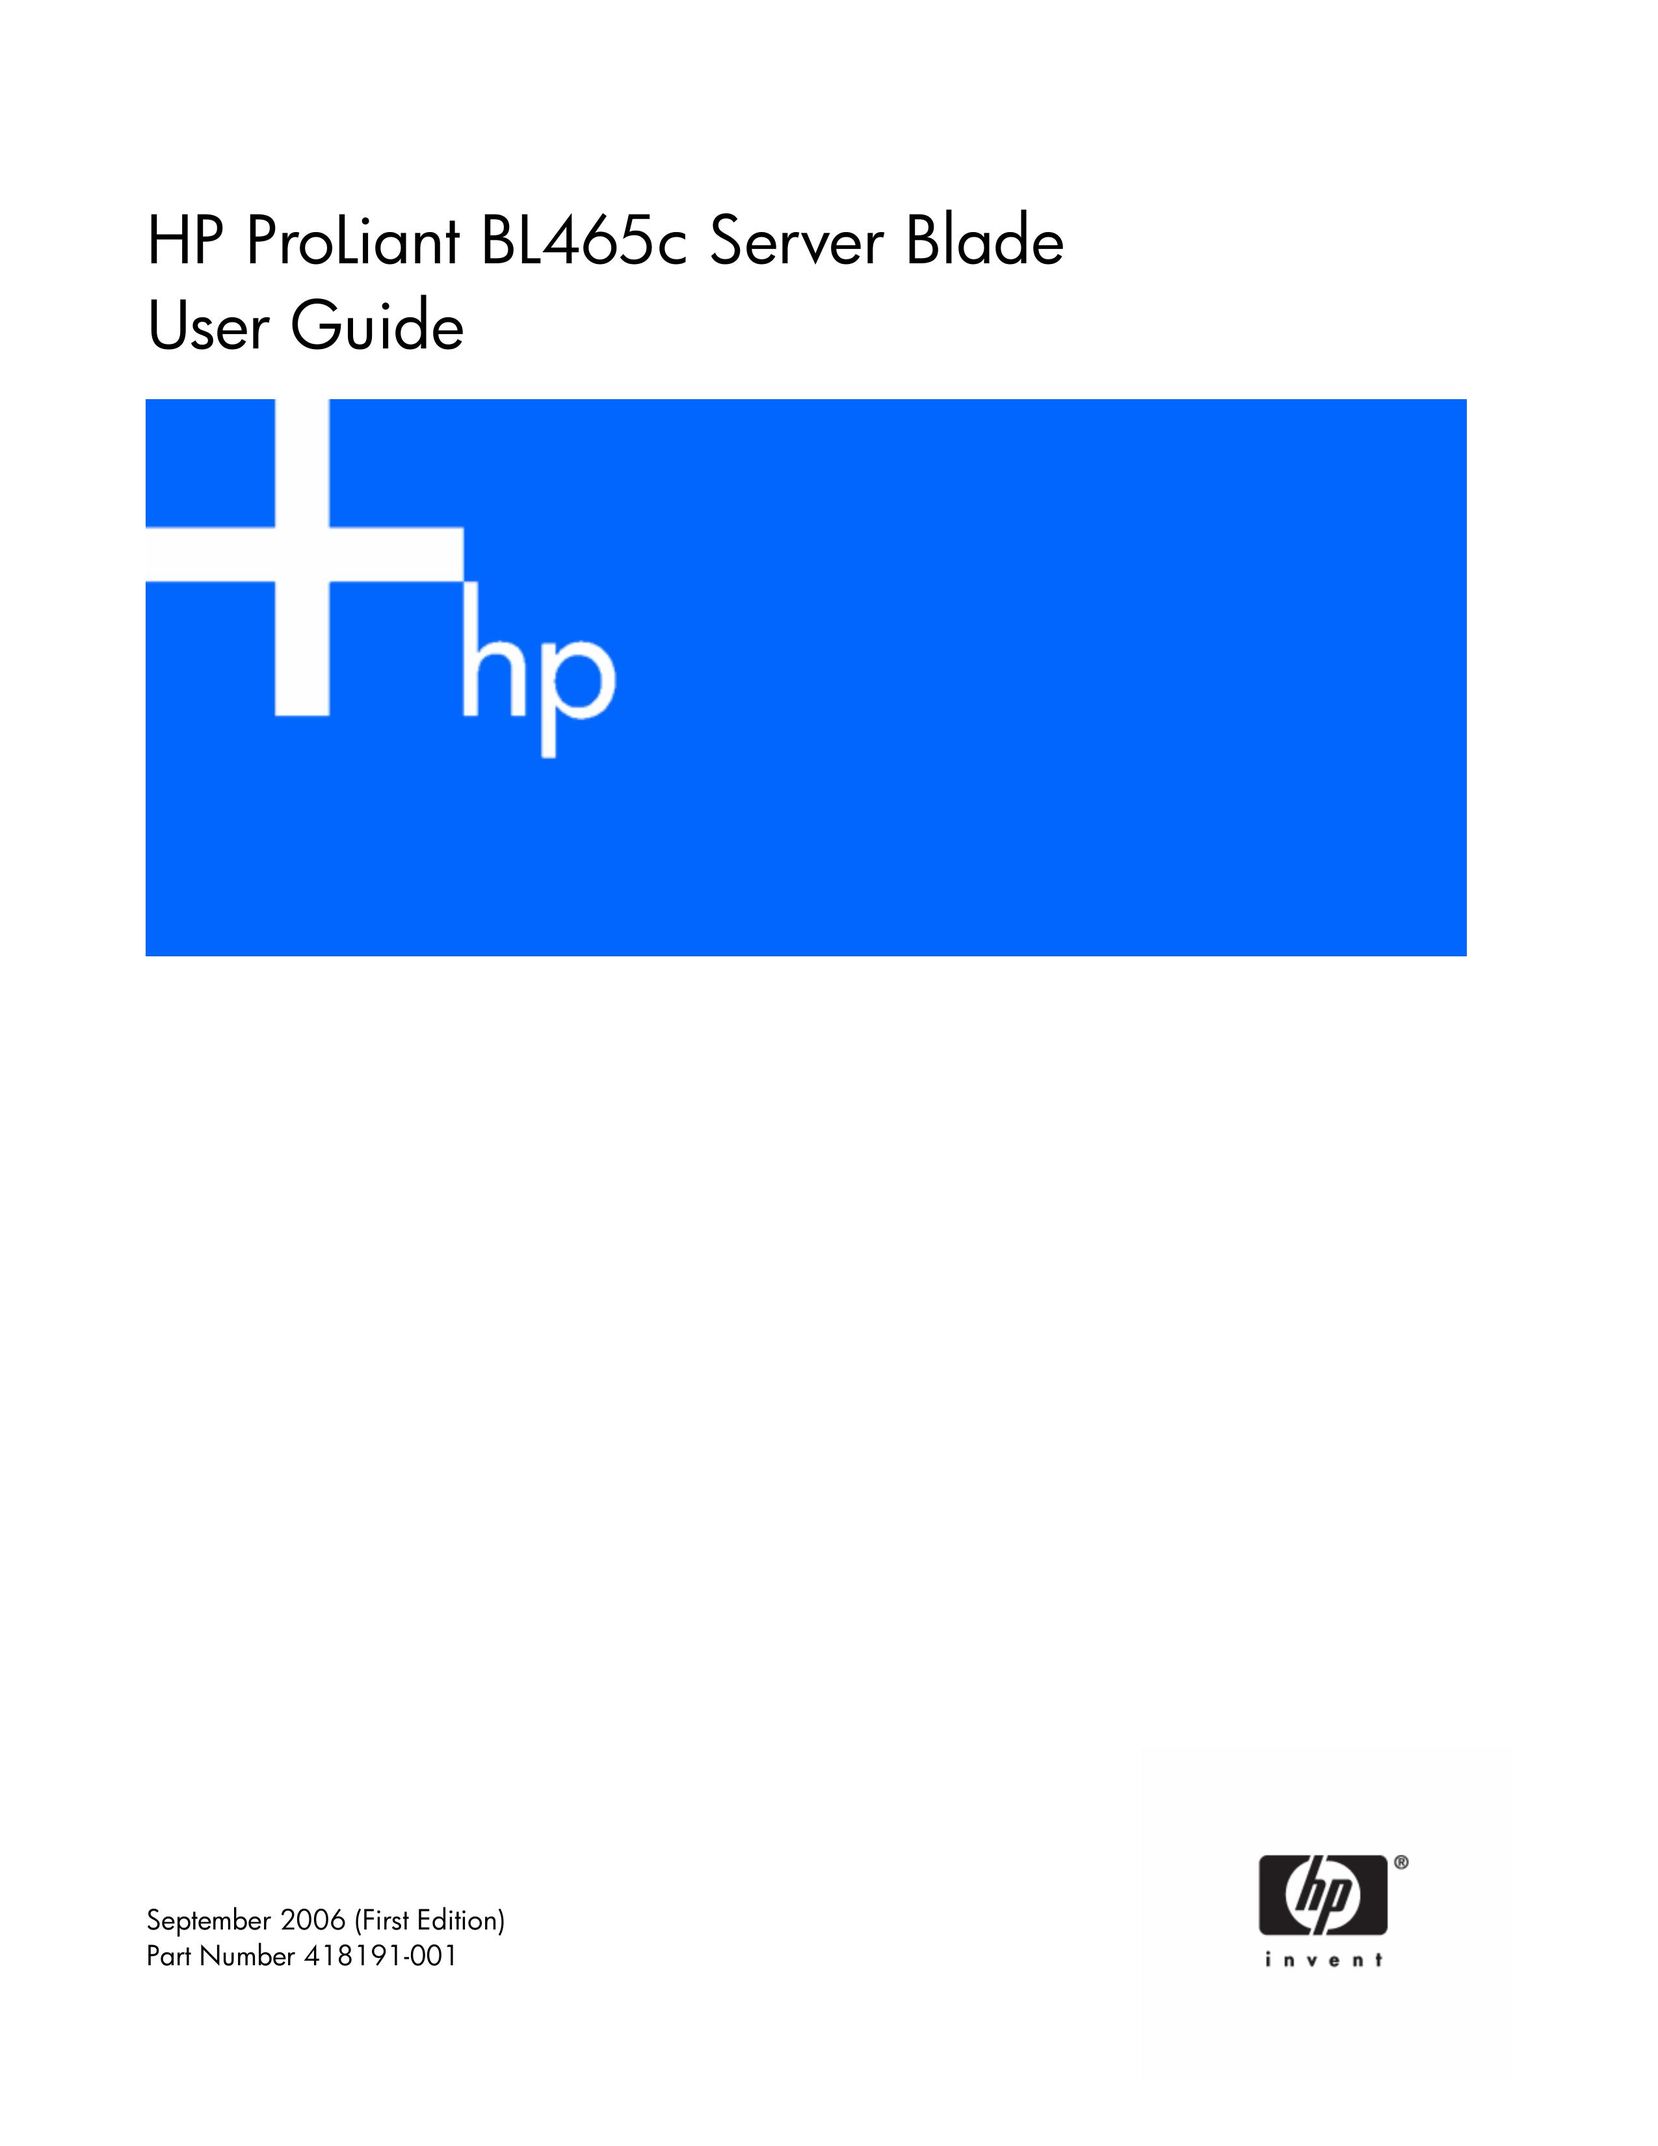 HP (Hewlett-Packard) 418191-001 Server User Manual